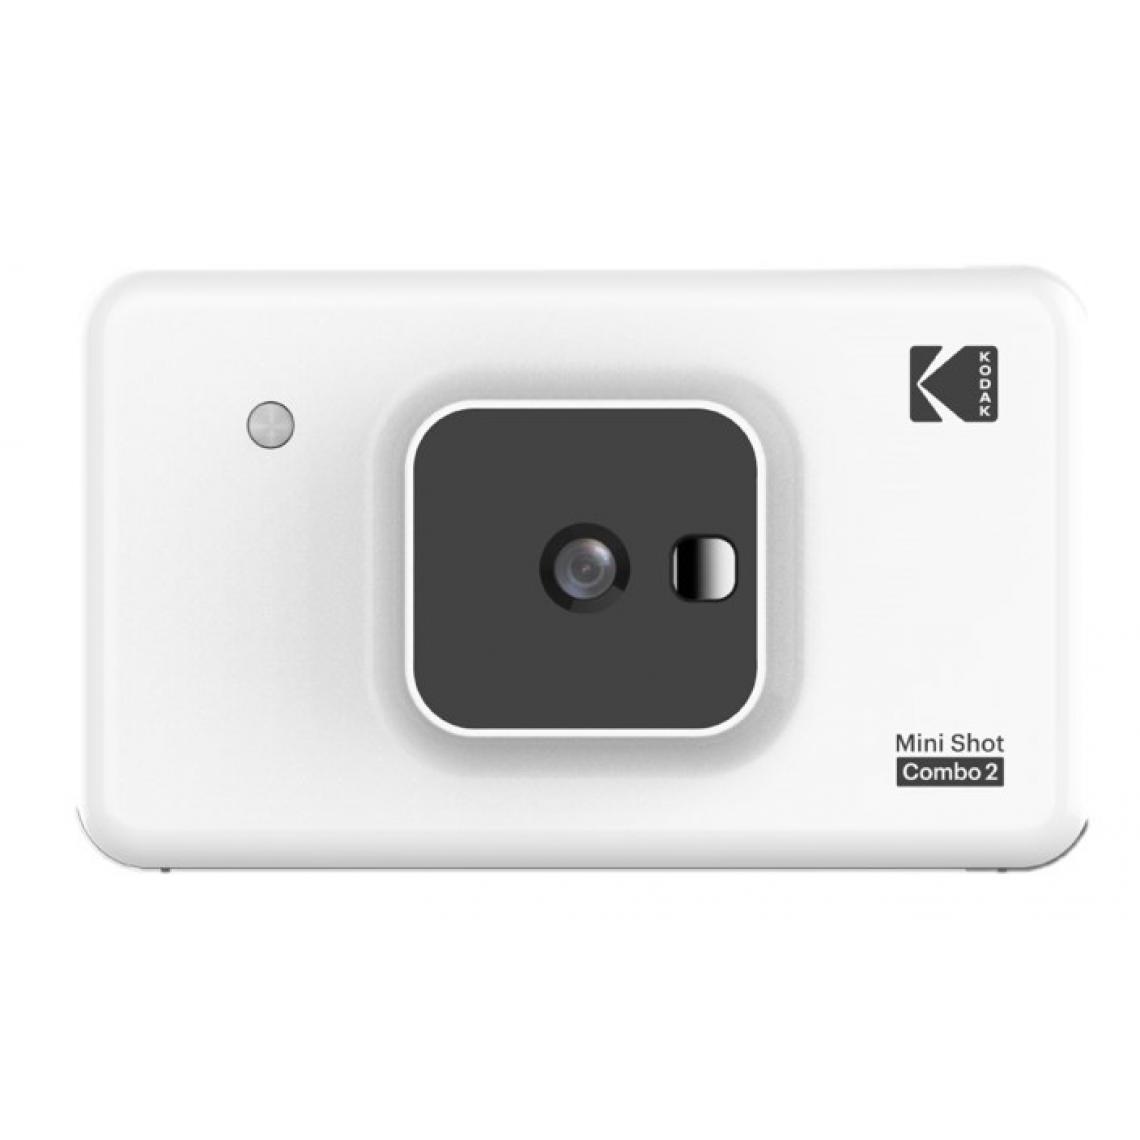 Kodak - KODAK Mini Shot Combo 2 C210 - Appareil Photo Instantané (Photo format Carte de Crédit 5,3 x 8,6 cm - 2,1 x 3,4 '', Écran LCD 1,7'', Bluetooth, Batterie Lithium, Sublimation Thermique 4Pass, 8 photos incluses) Blanc-Blanc-2.1 x 3.4'' - Appareil compact